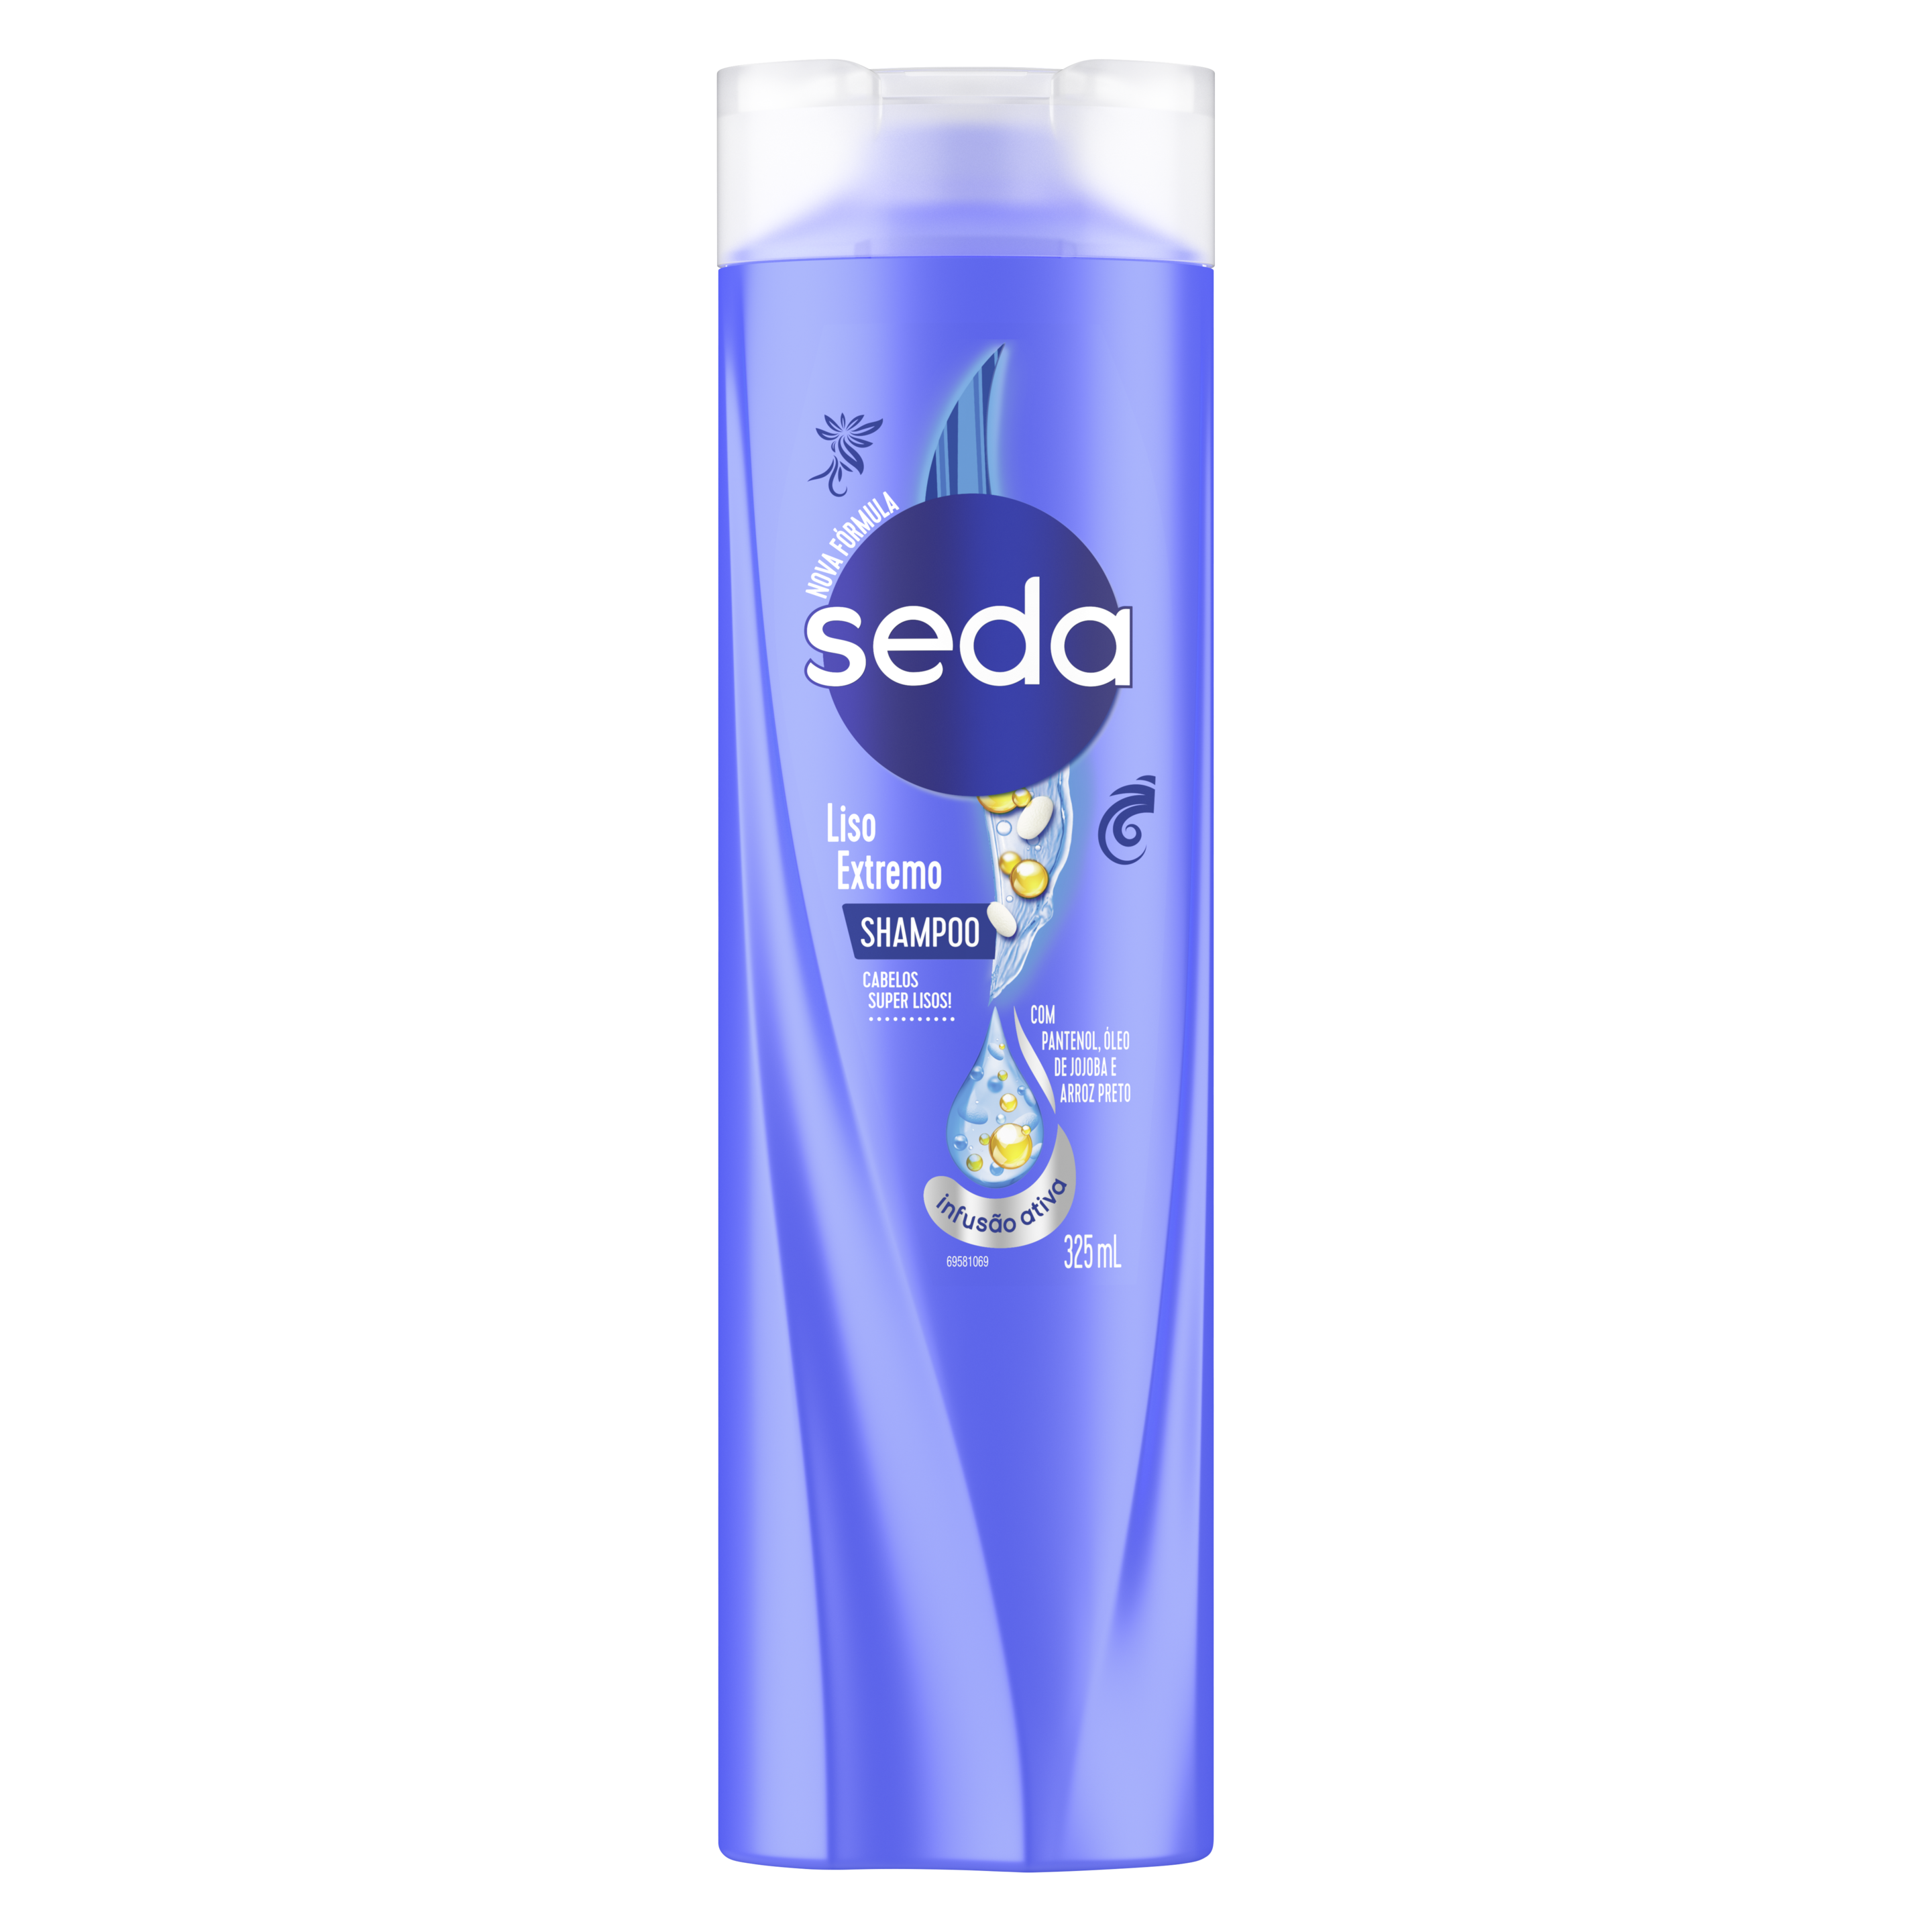 Uma imagem frontal da embalagem de Shampoo Seda Lixo Extremo 325ml